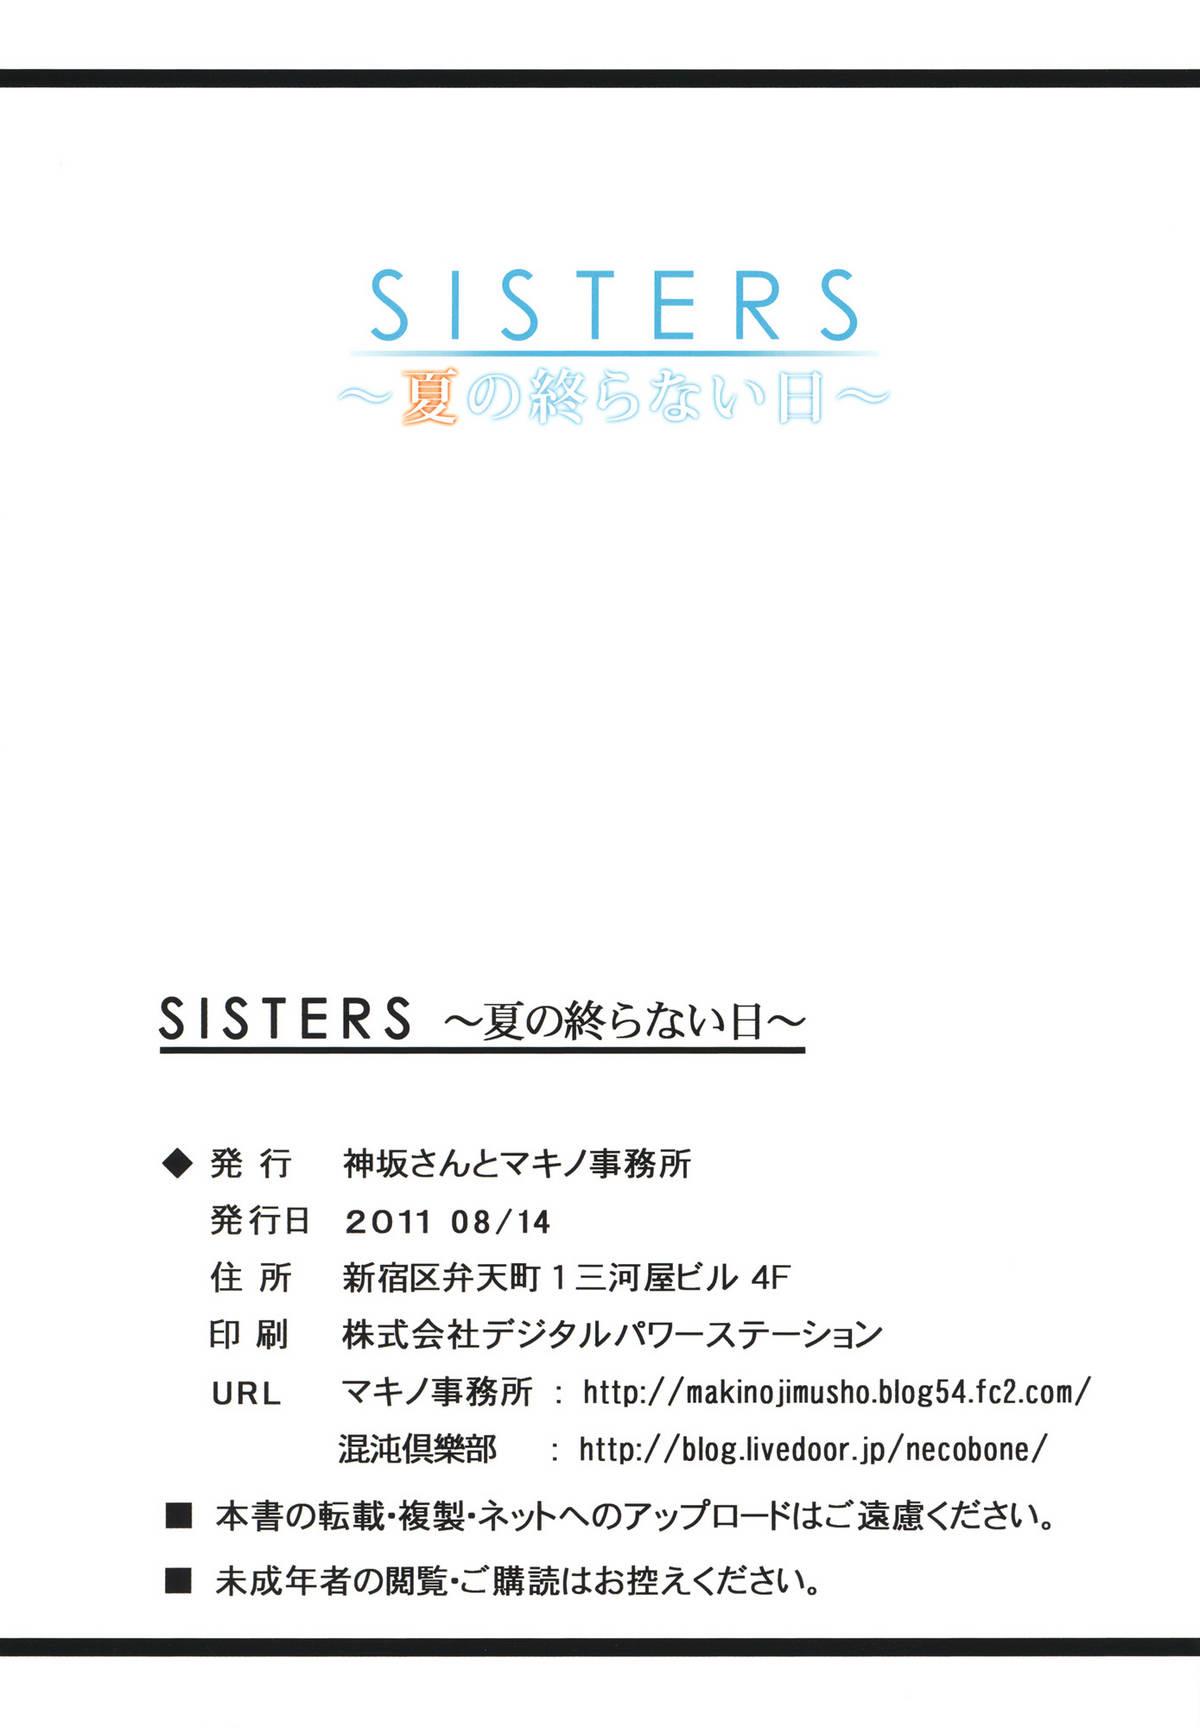 Cdmx SISTERS - Kakusareta Kioku, Natsu no Owaranai Hi - Sisters natsu no saigo no hi Mexicano - Page 34